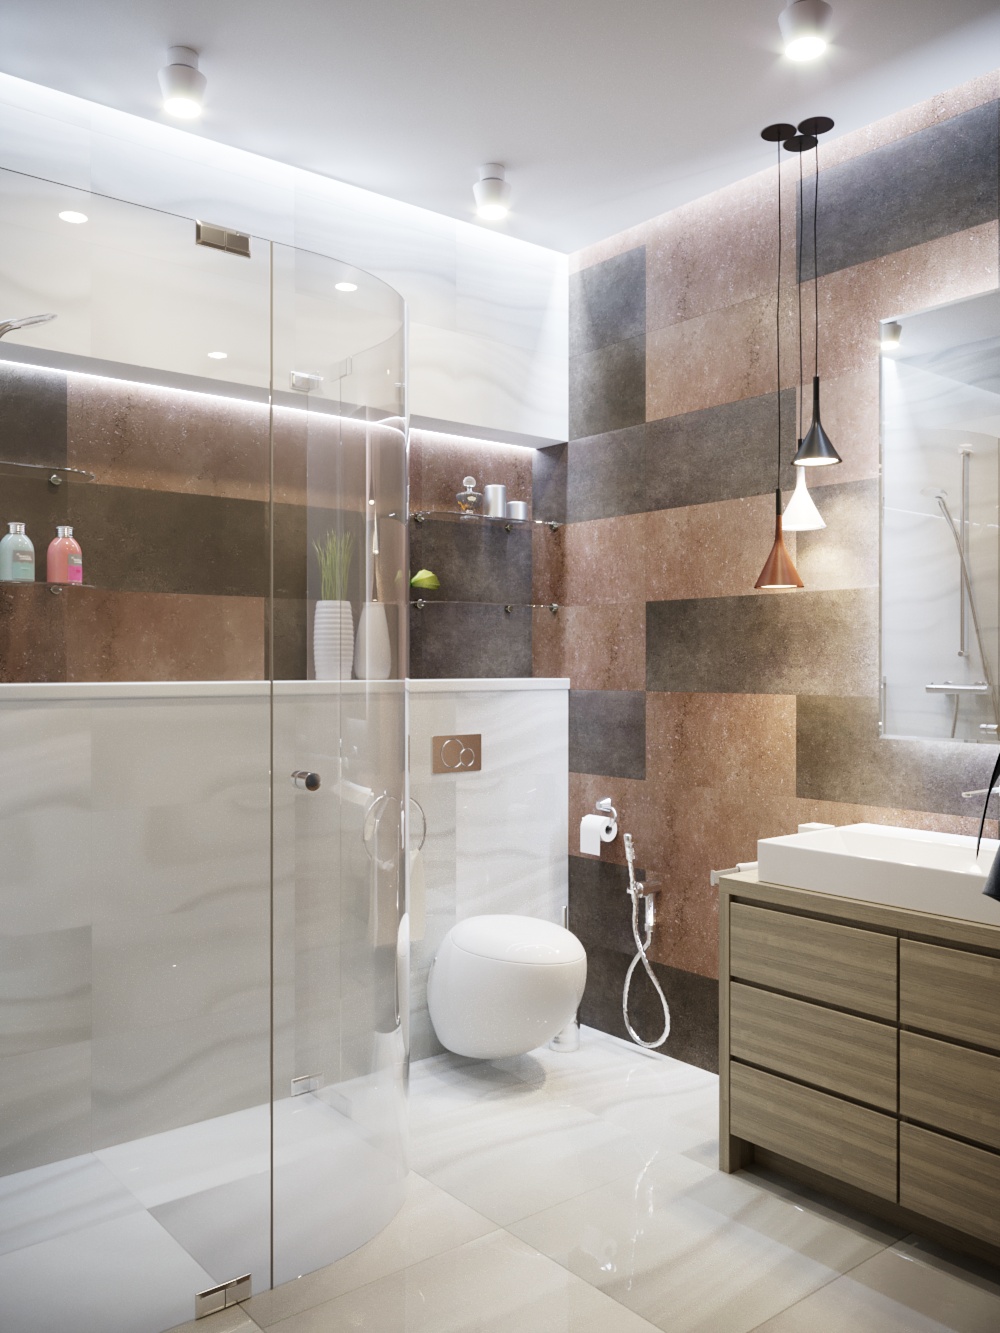 Salle de douche et dressing dans 3d max corona render image